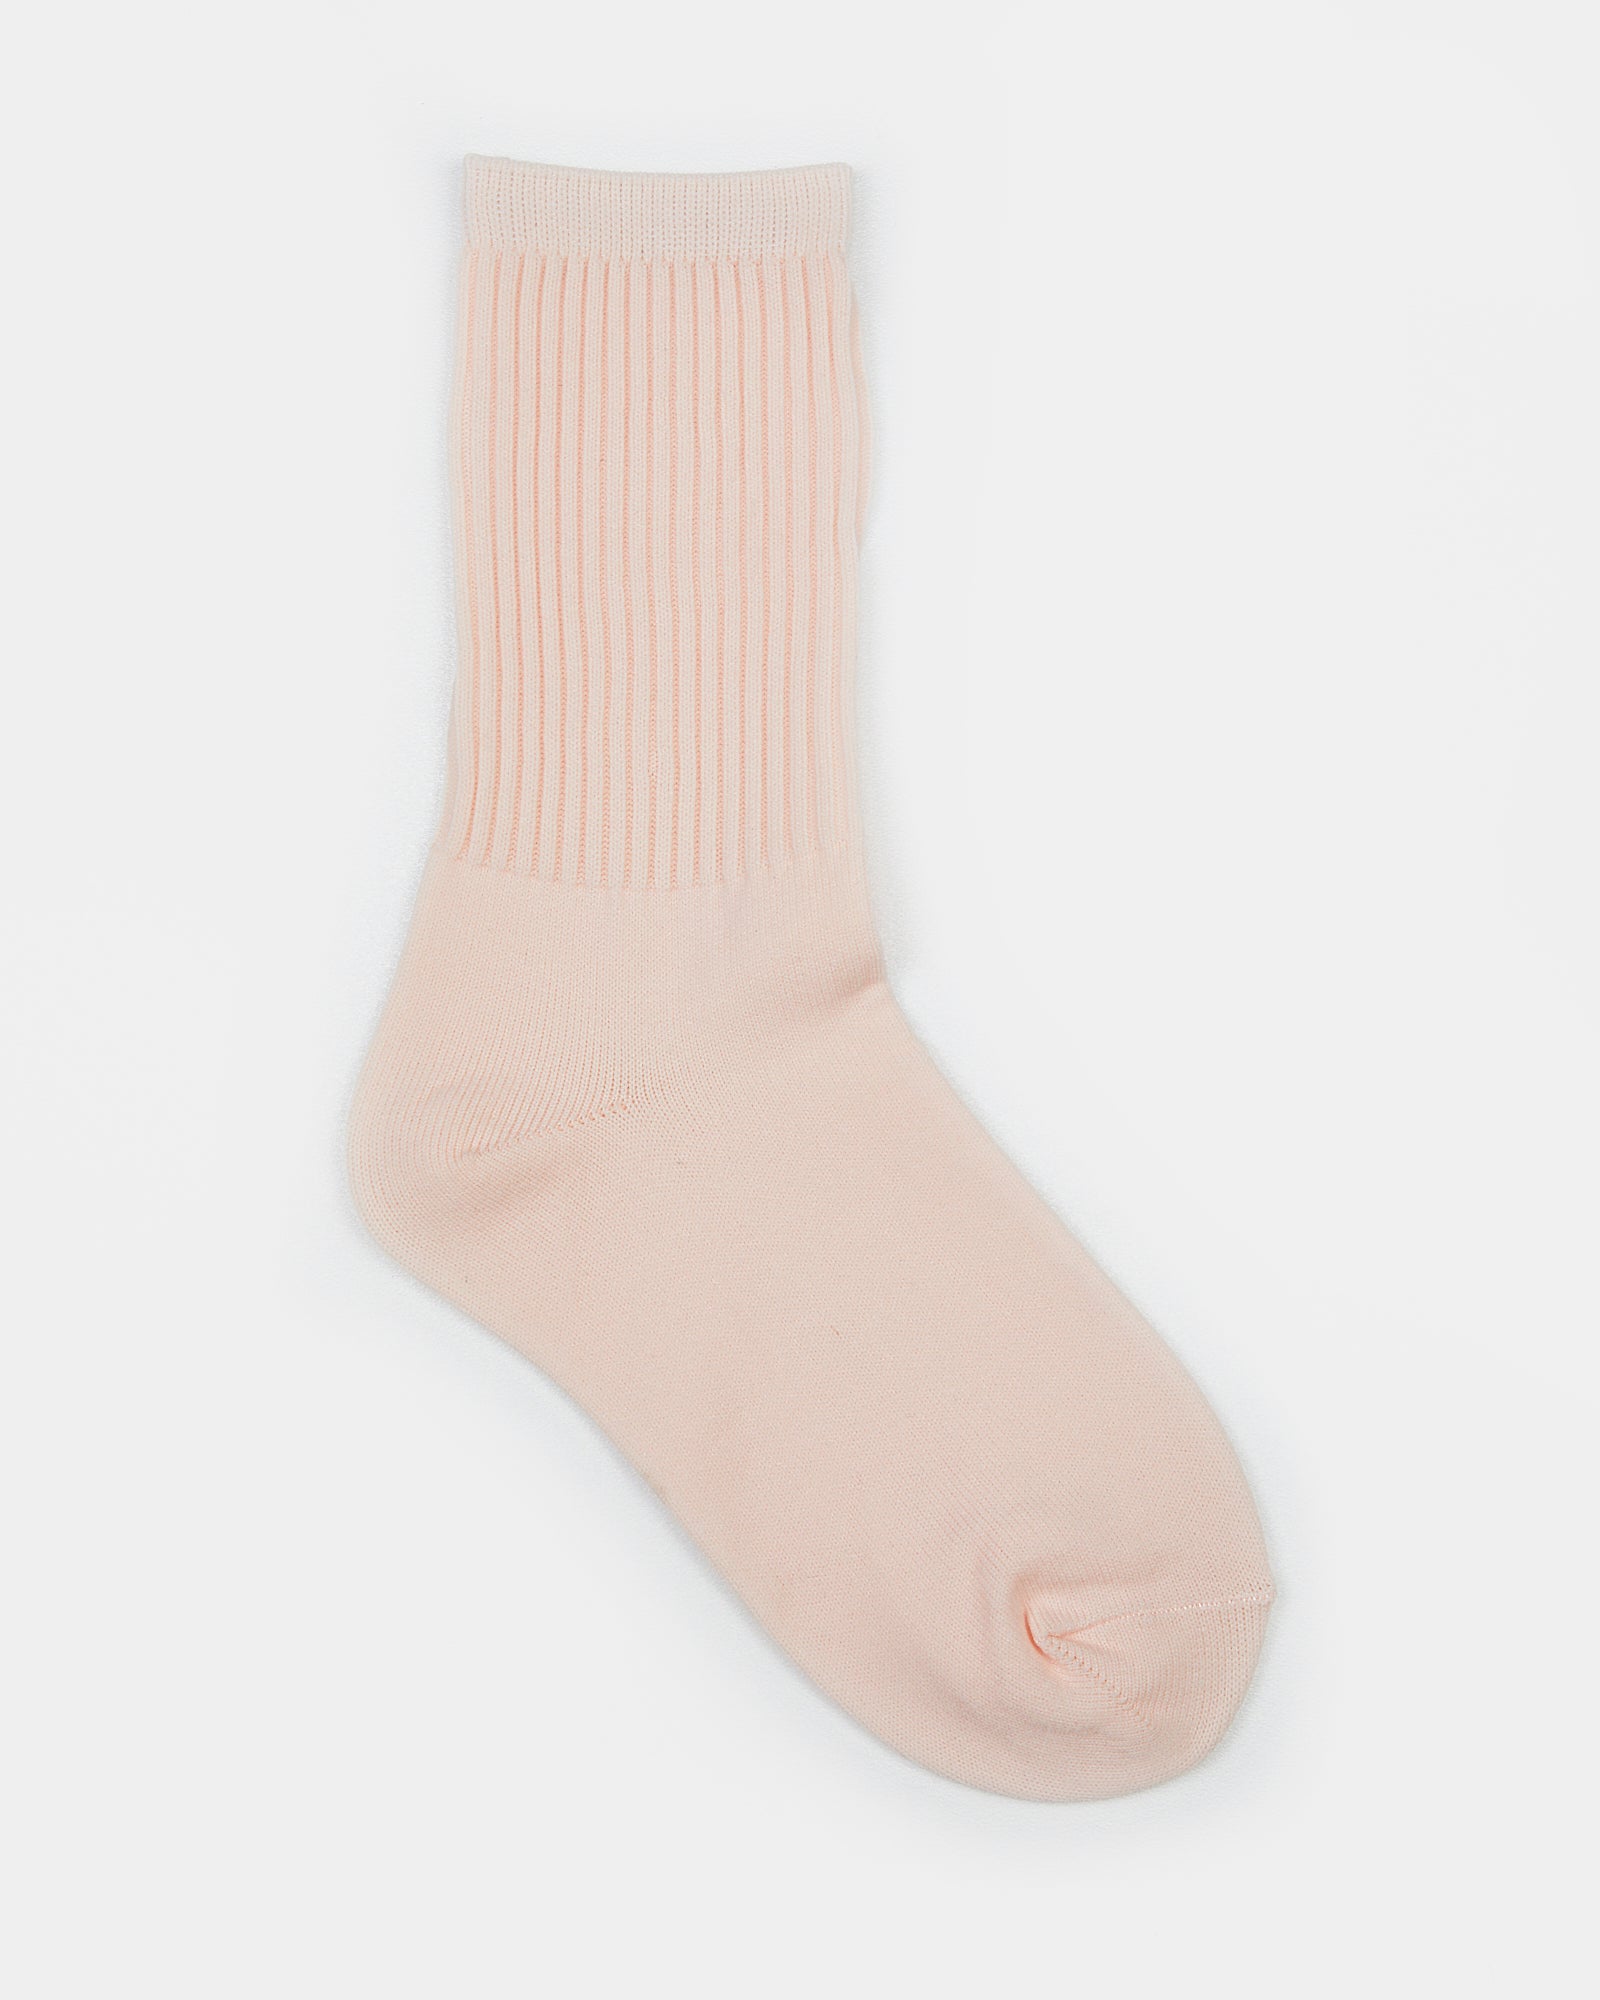 Dance Socks Flesh Pink – Shoes & Sox